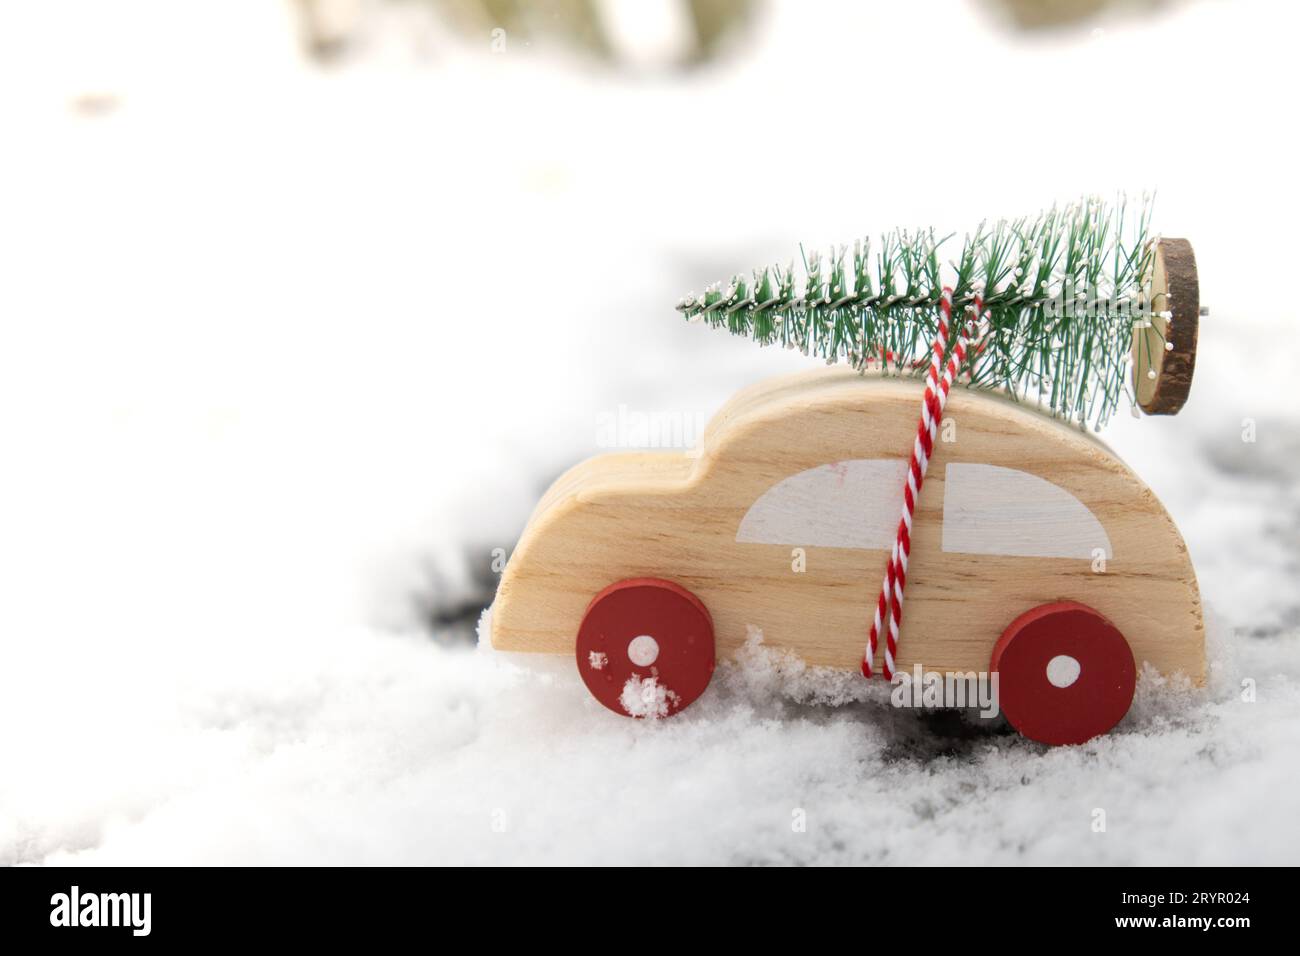 Voiture en bois transportant l'arbre de Noël sur la neige. Copier l'espace pour le texte voiture jouet dans le paysage enneigé. Joyeux Noël et bonne année Banque D'Images